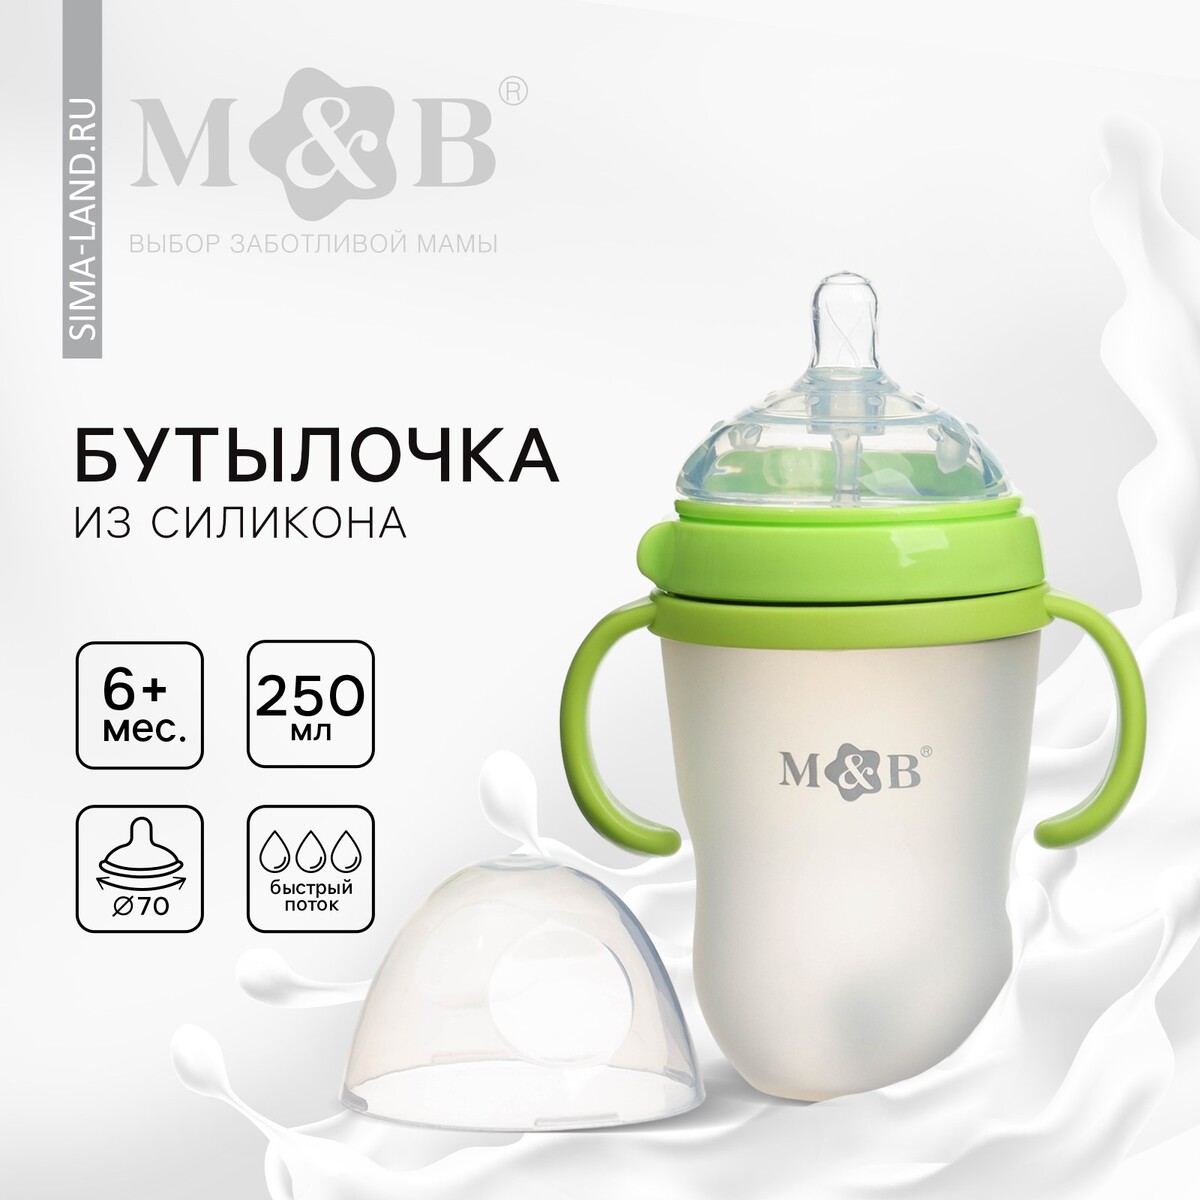 Бутылочка для кормления m&b, шг ø70мм, 250мл., с ручками, силиконовая колба, цвет зеленый Mum&Baby